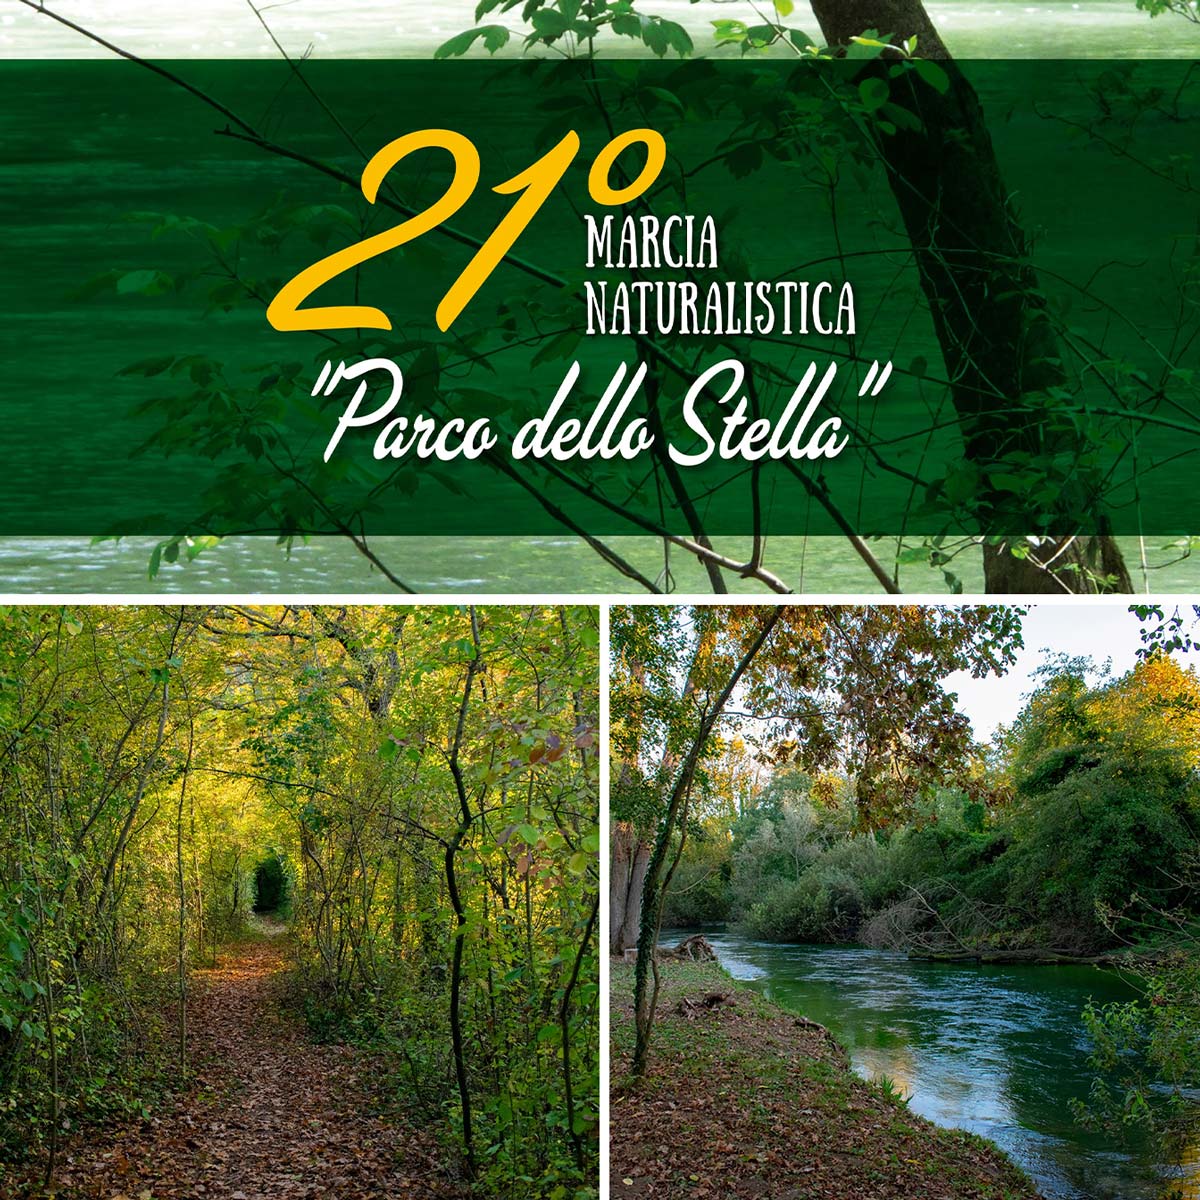 21° Marcia Naturalistica “Parco dello Stella”